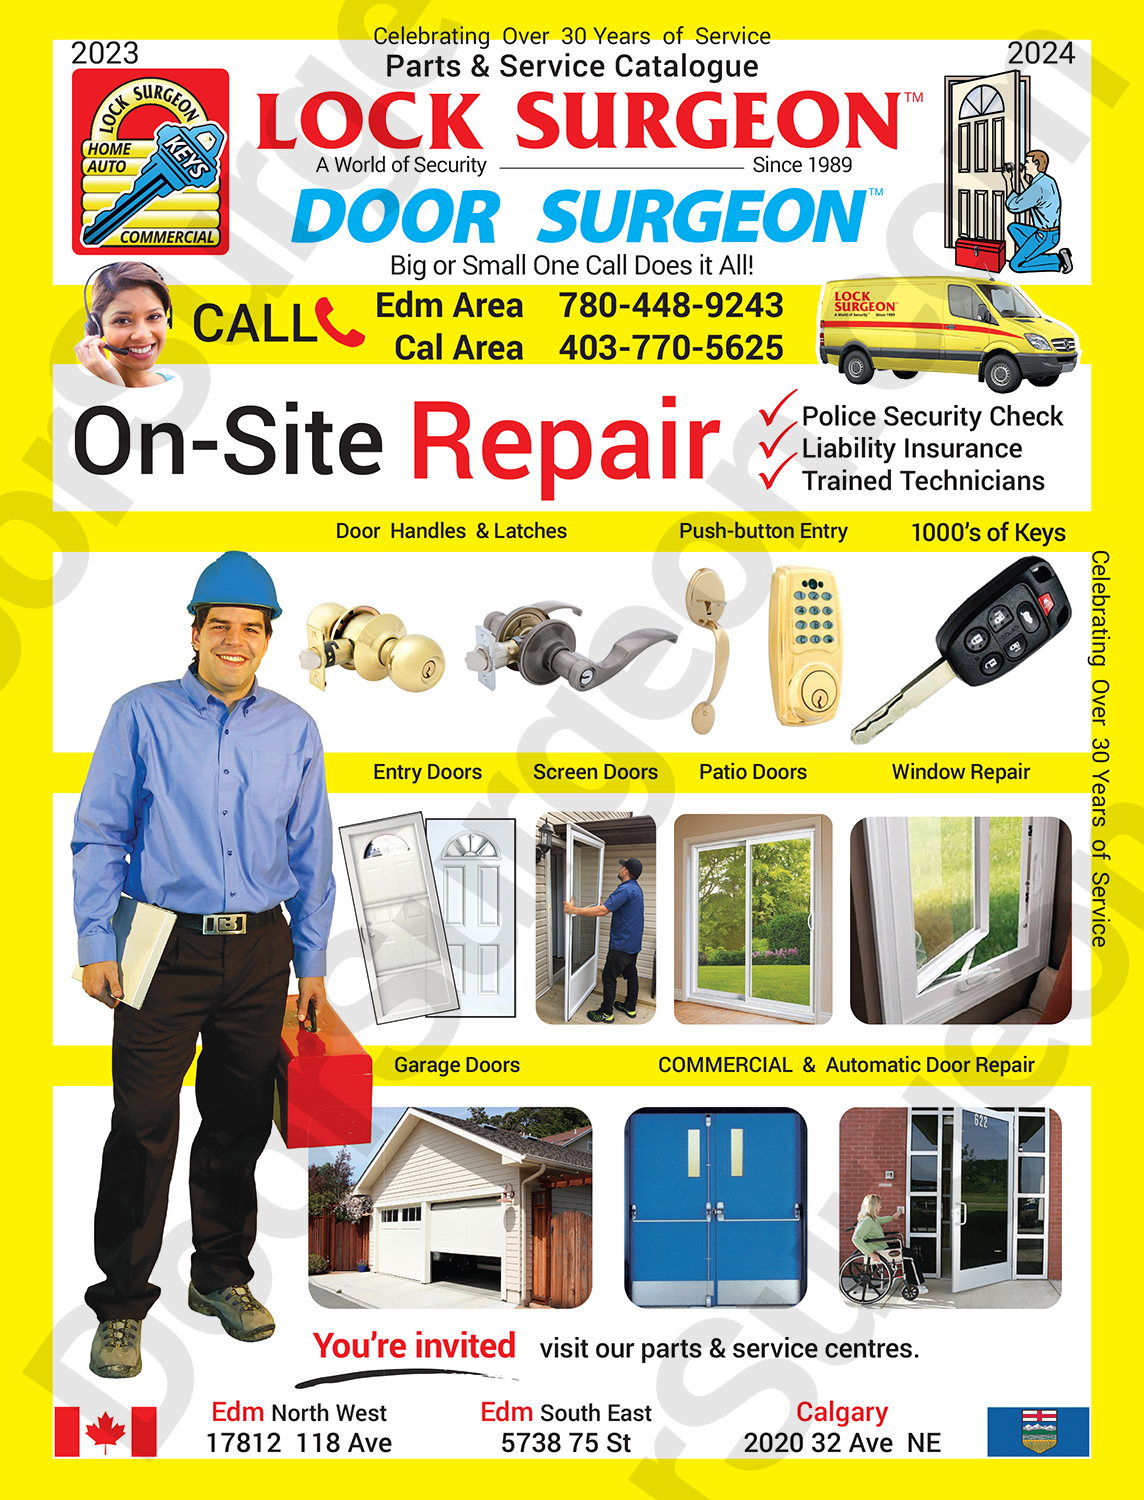 Door Surgeon commercial on-site door repair, entry doors, screen doors, patio doors & window repair.